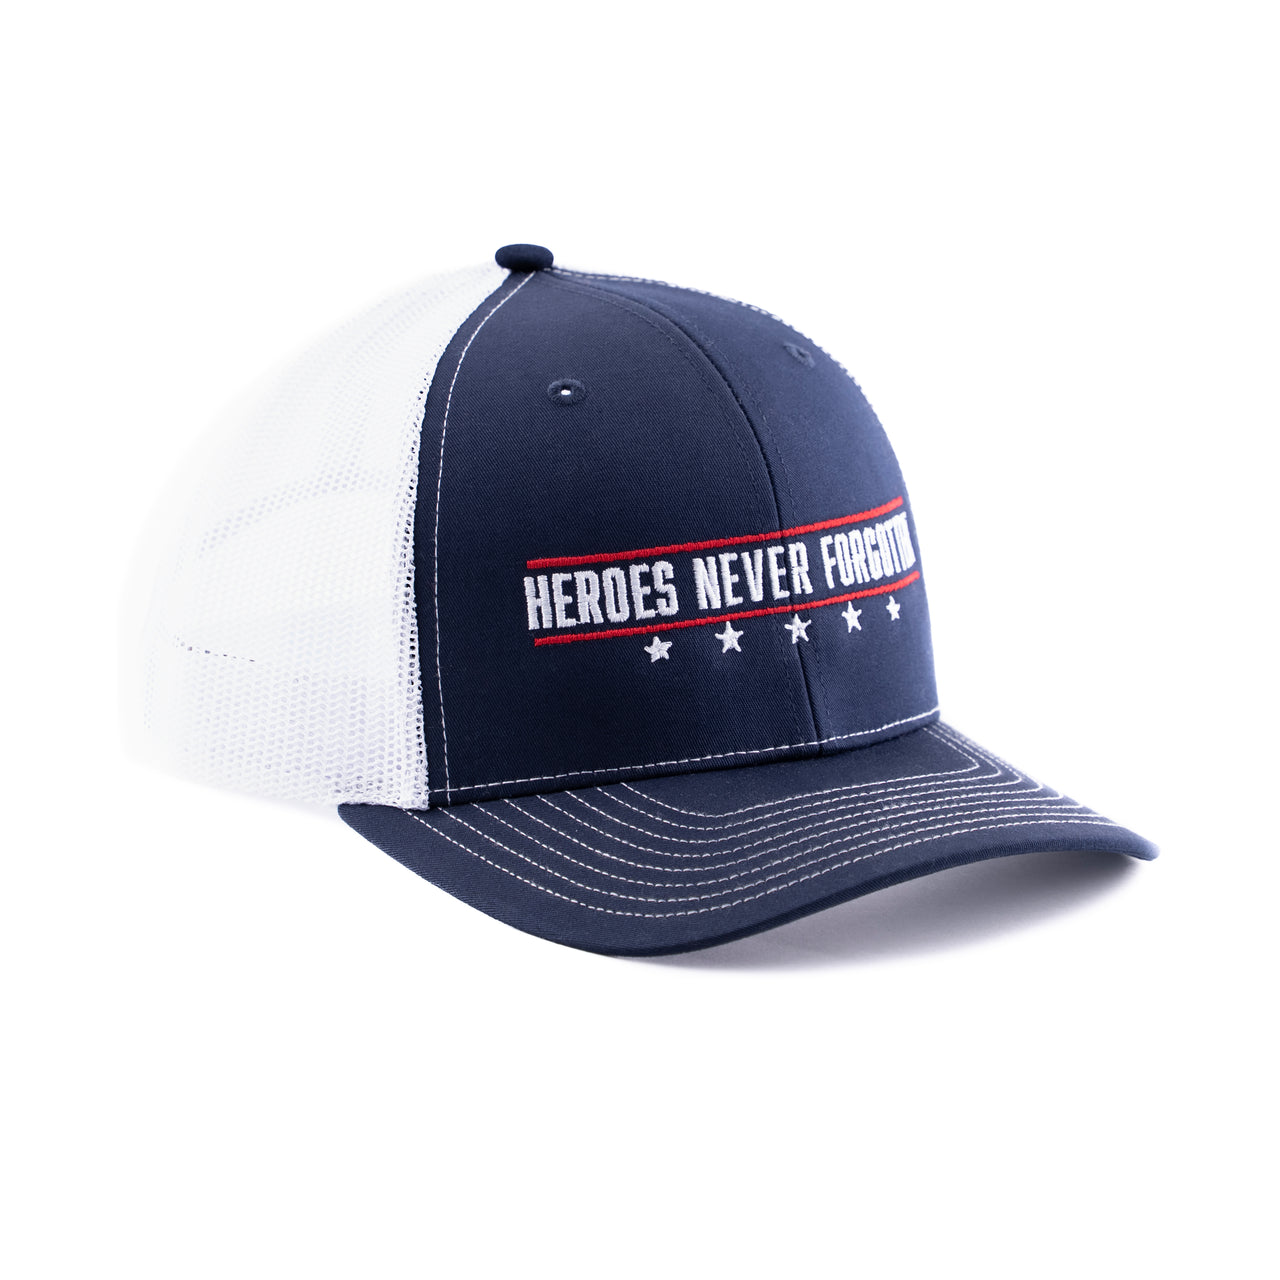 Heroes Never Forgotten - Hat